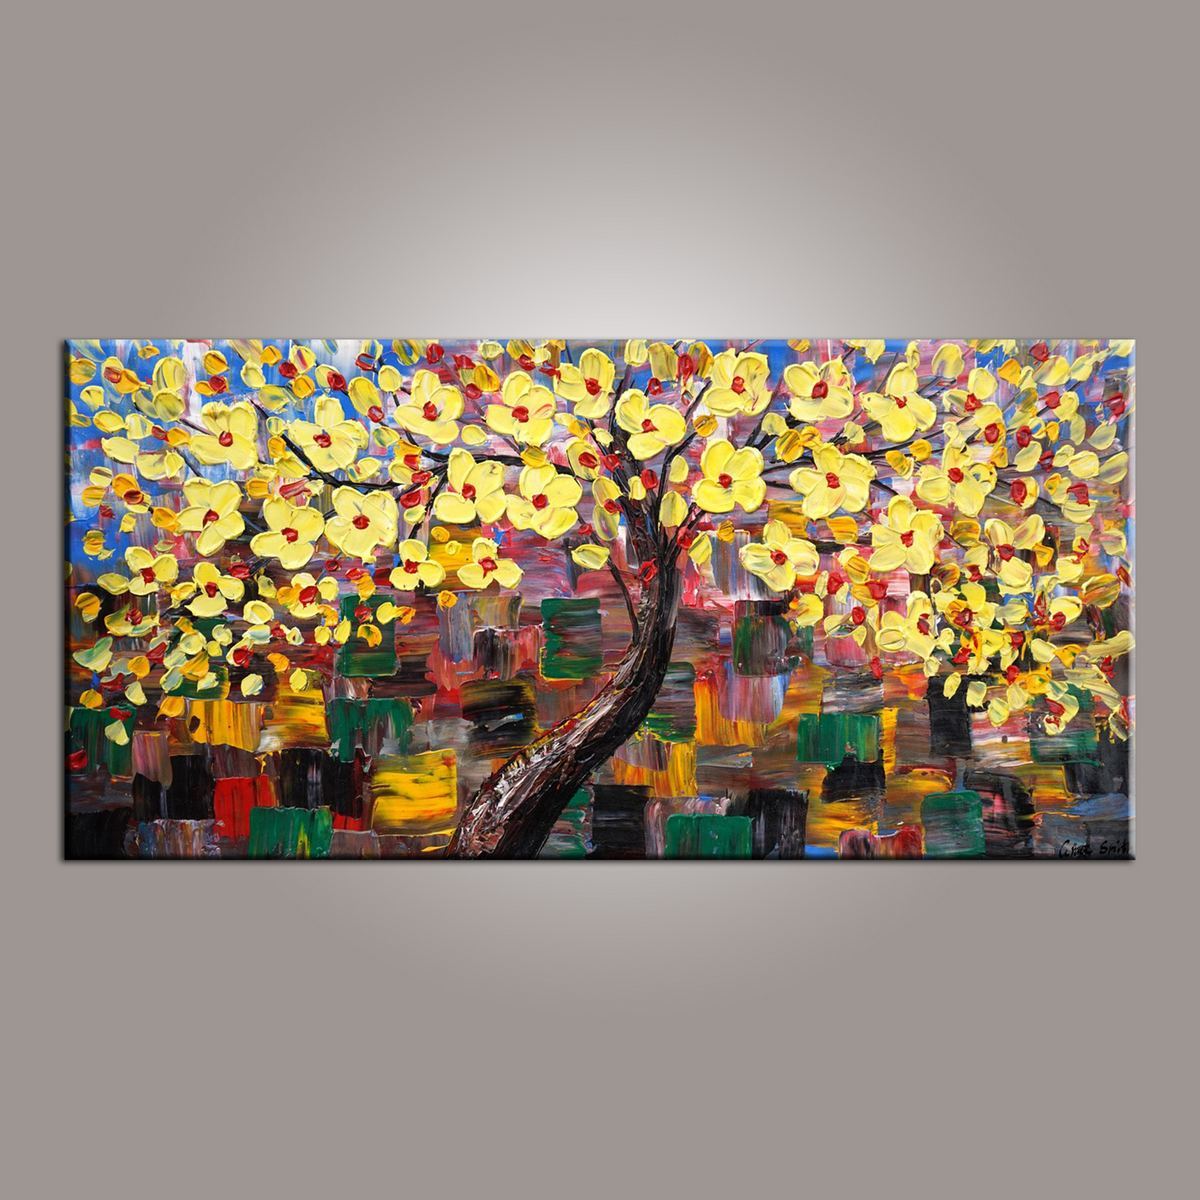 Flower Tree Painting, Canvas Wall Art, Abstract Art Painting, Painting on Sale, Dining Room Wall Art, Canvas Art, Modern Art, Contemporary Art-LargePaintingArt.com